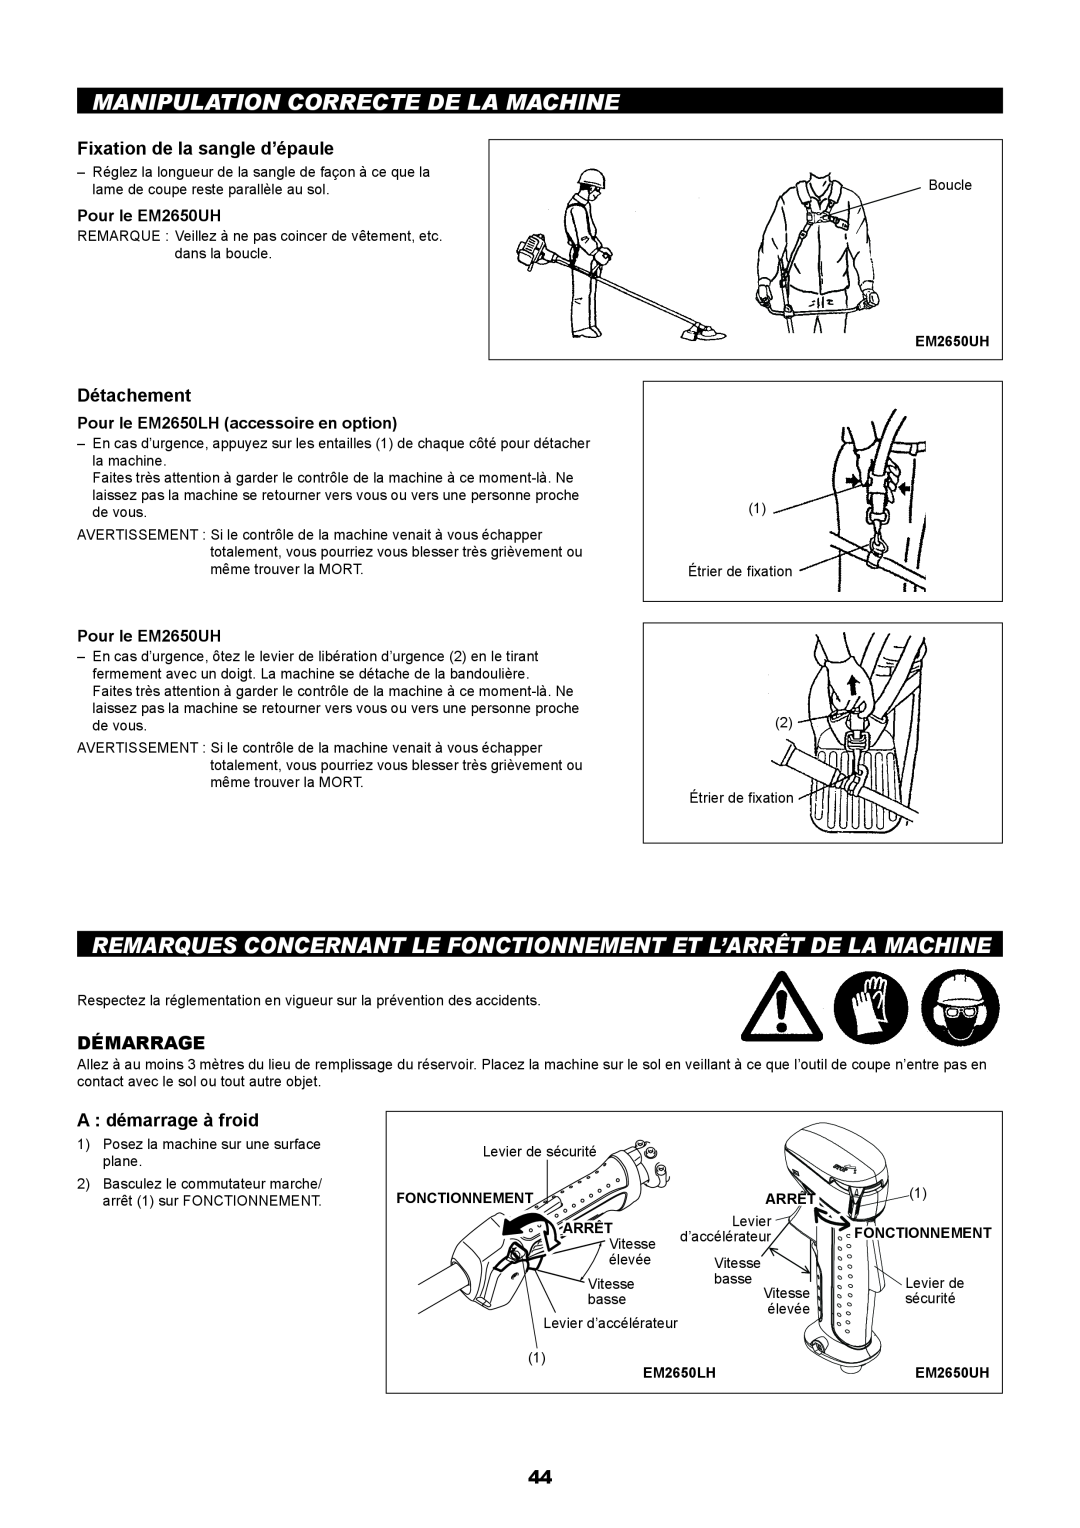 Makita EM2650LH manual Manipulation Correcte De La Machine, Remarques Concernant Le Fonctionnement Et L’Arrêt De La Machine 